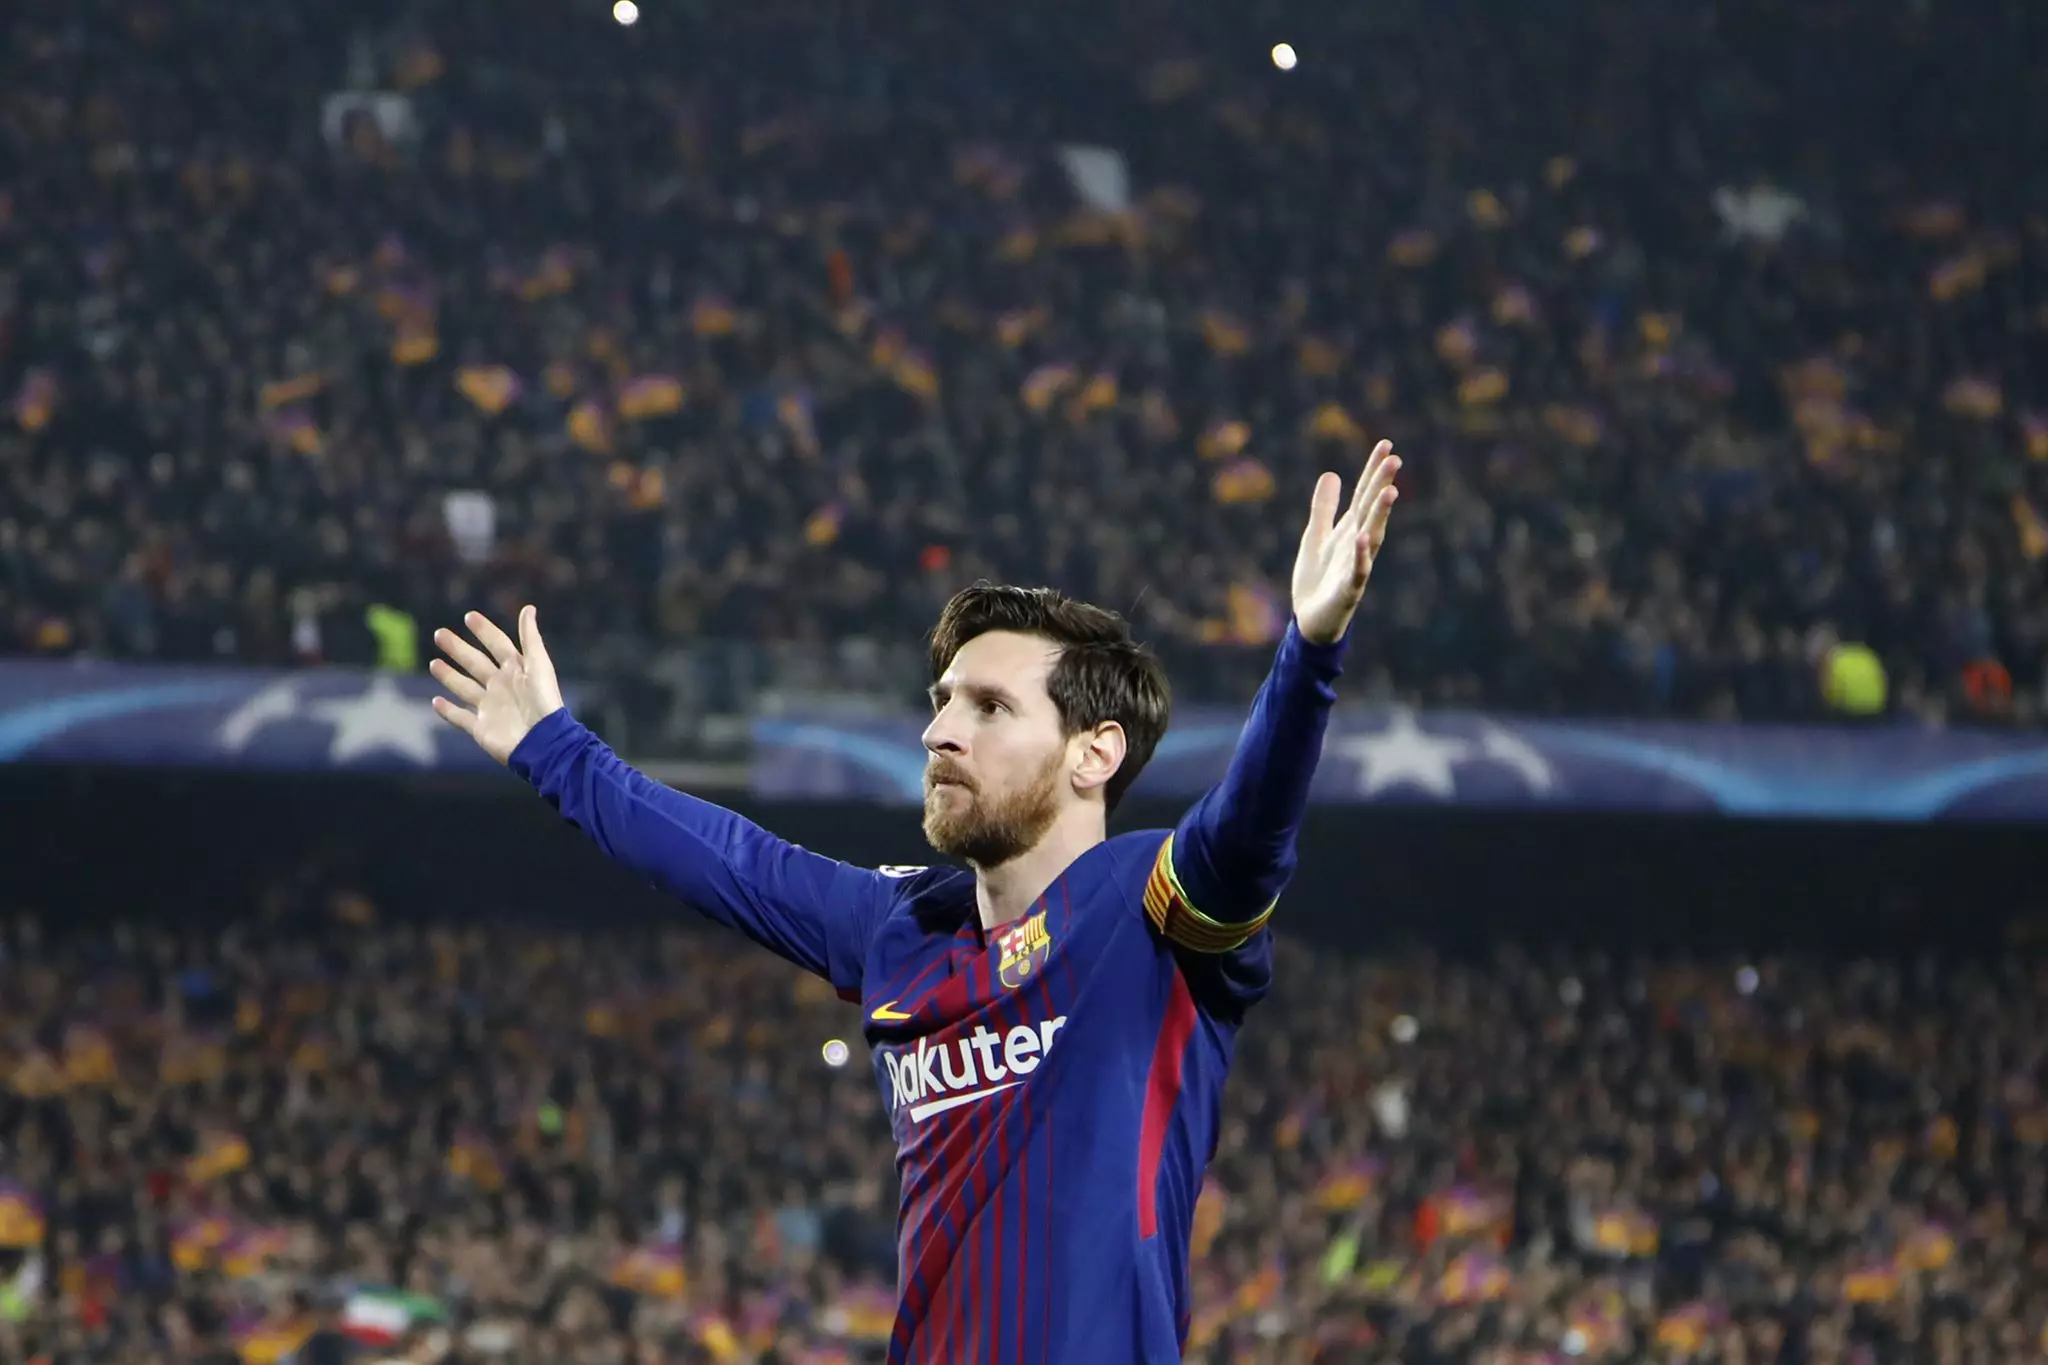 Messi celebrates scoring. Image: PA